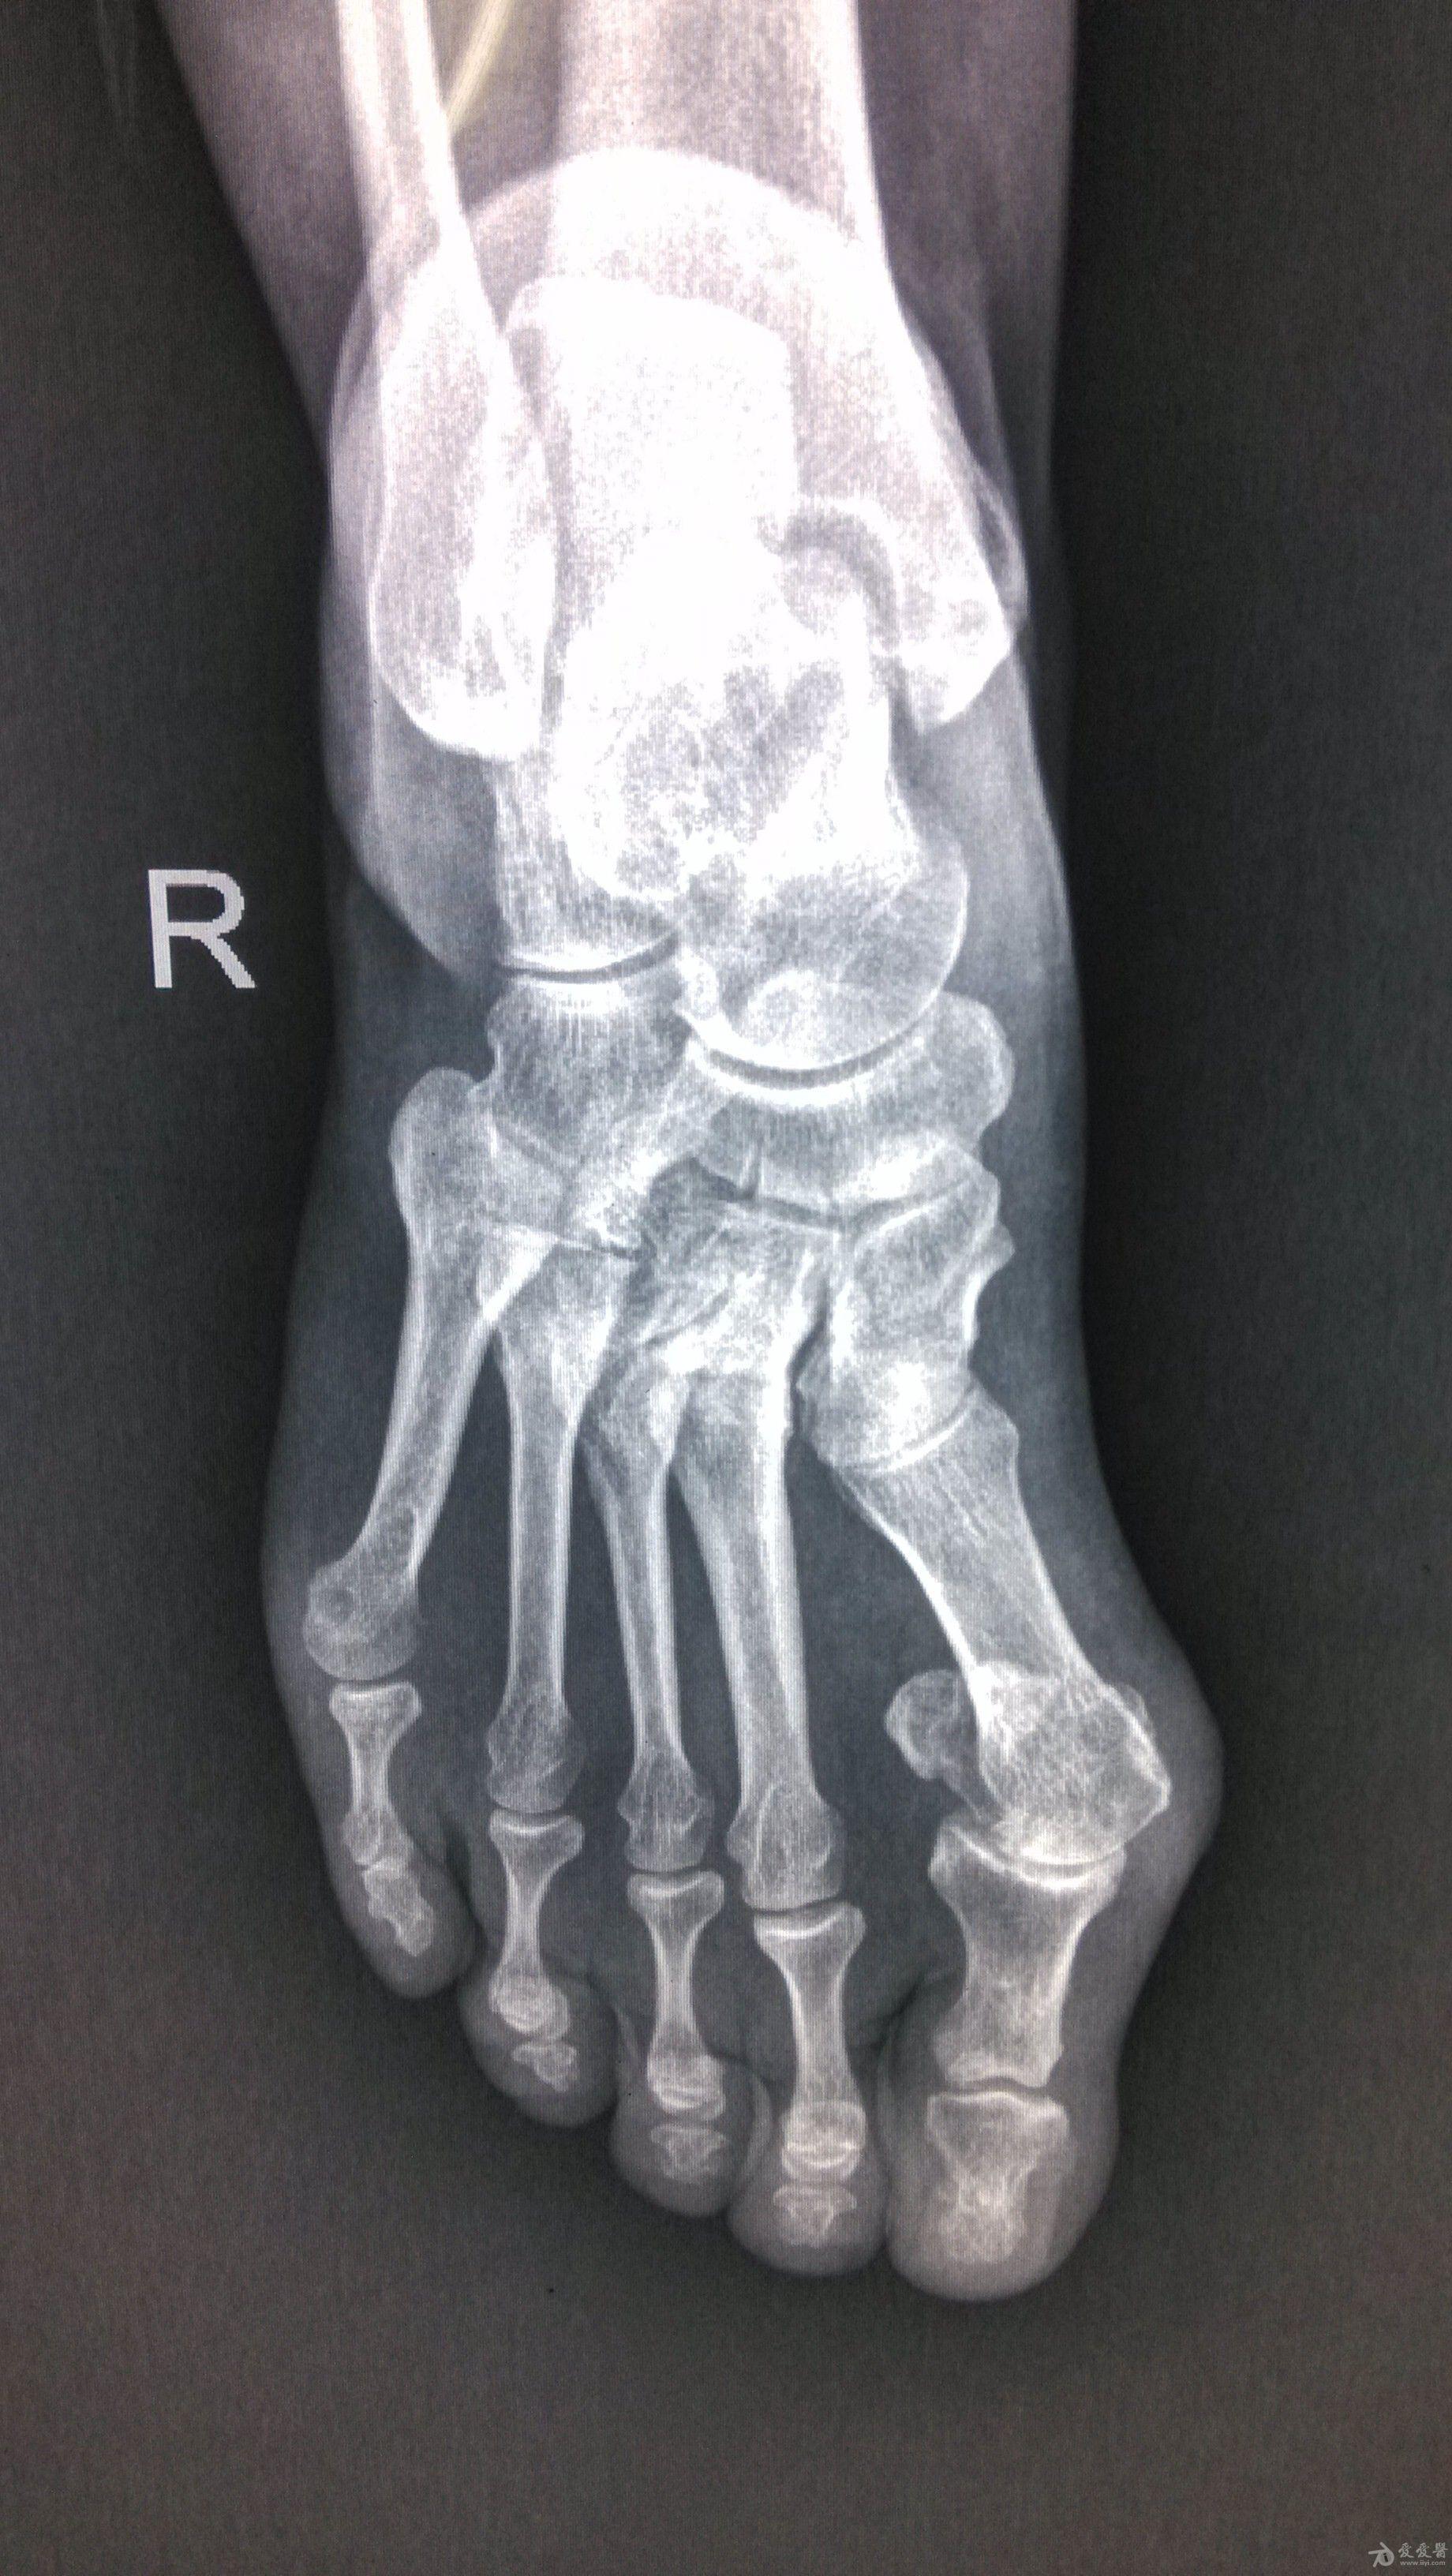 足部骨骼x光图片